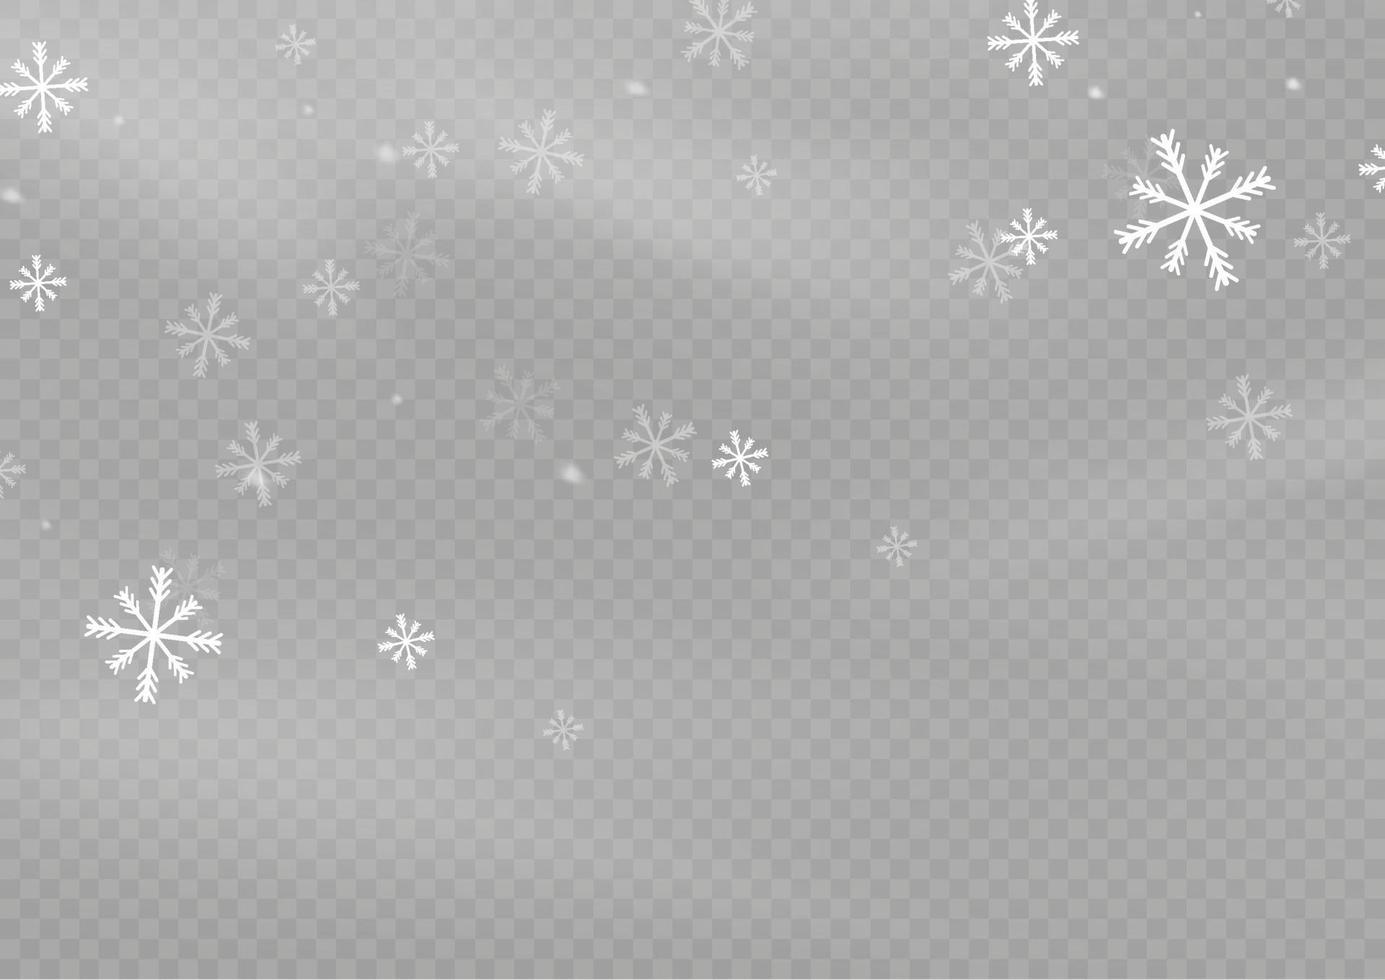 neige et vent. élément décoratif dégradé blanc. illustration vectorielle. hiver et neige avec brouillard. vent et brouillard. vecteur